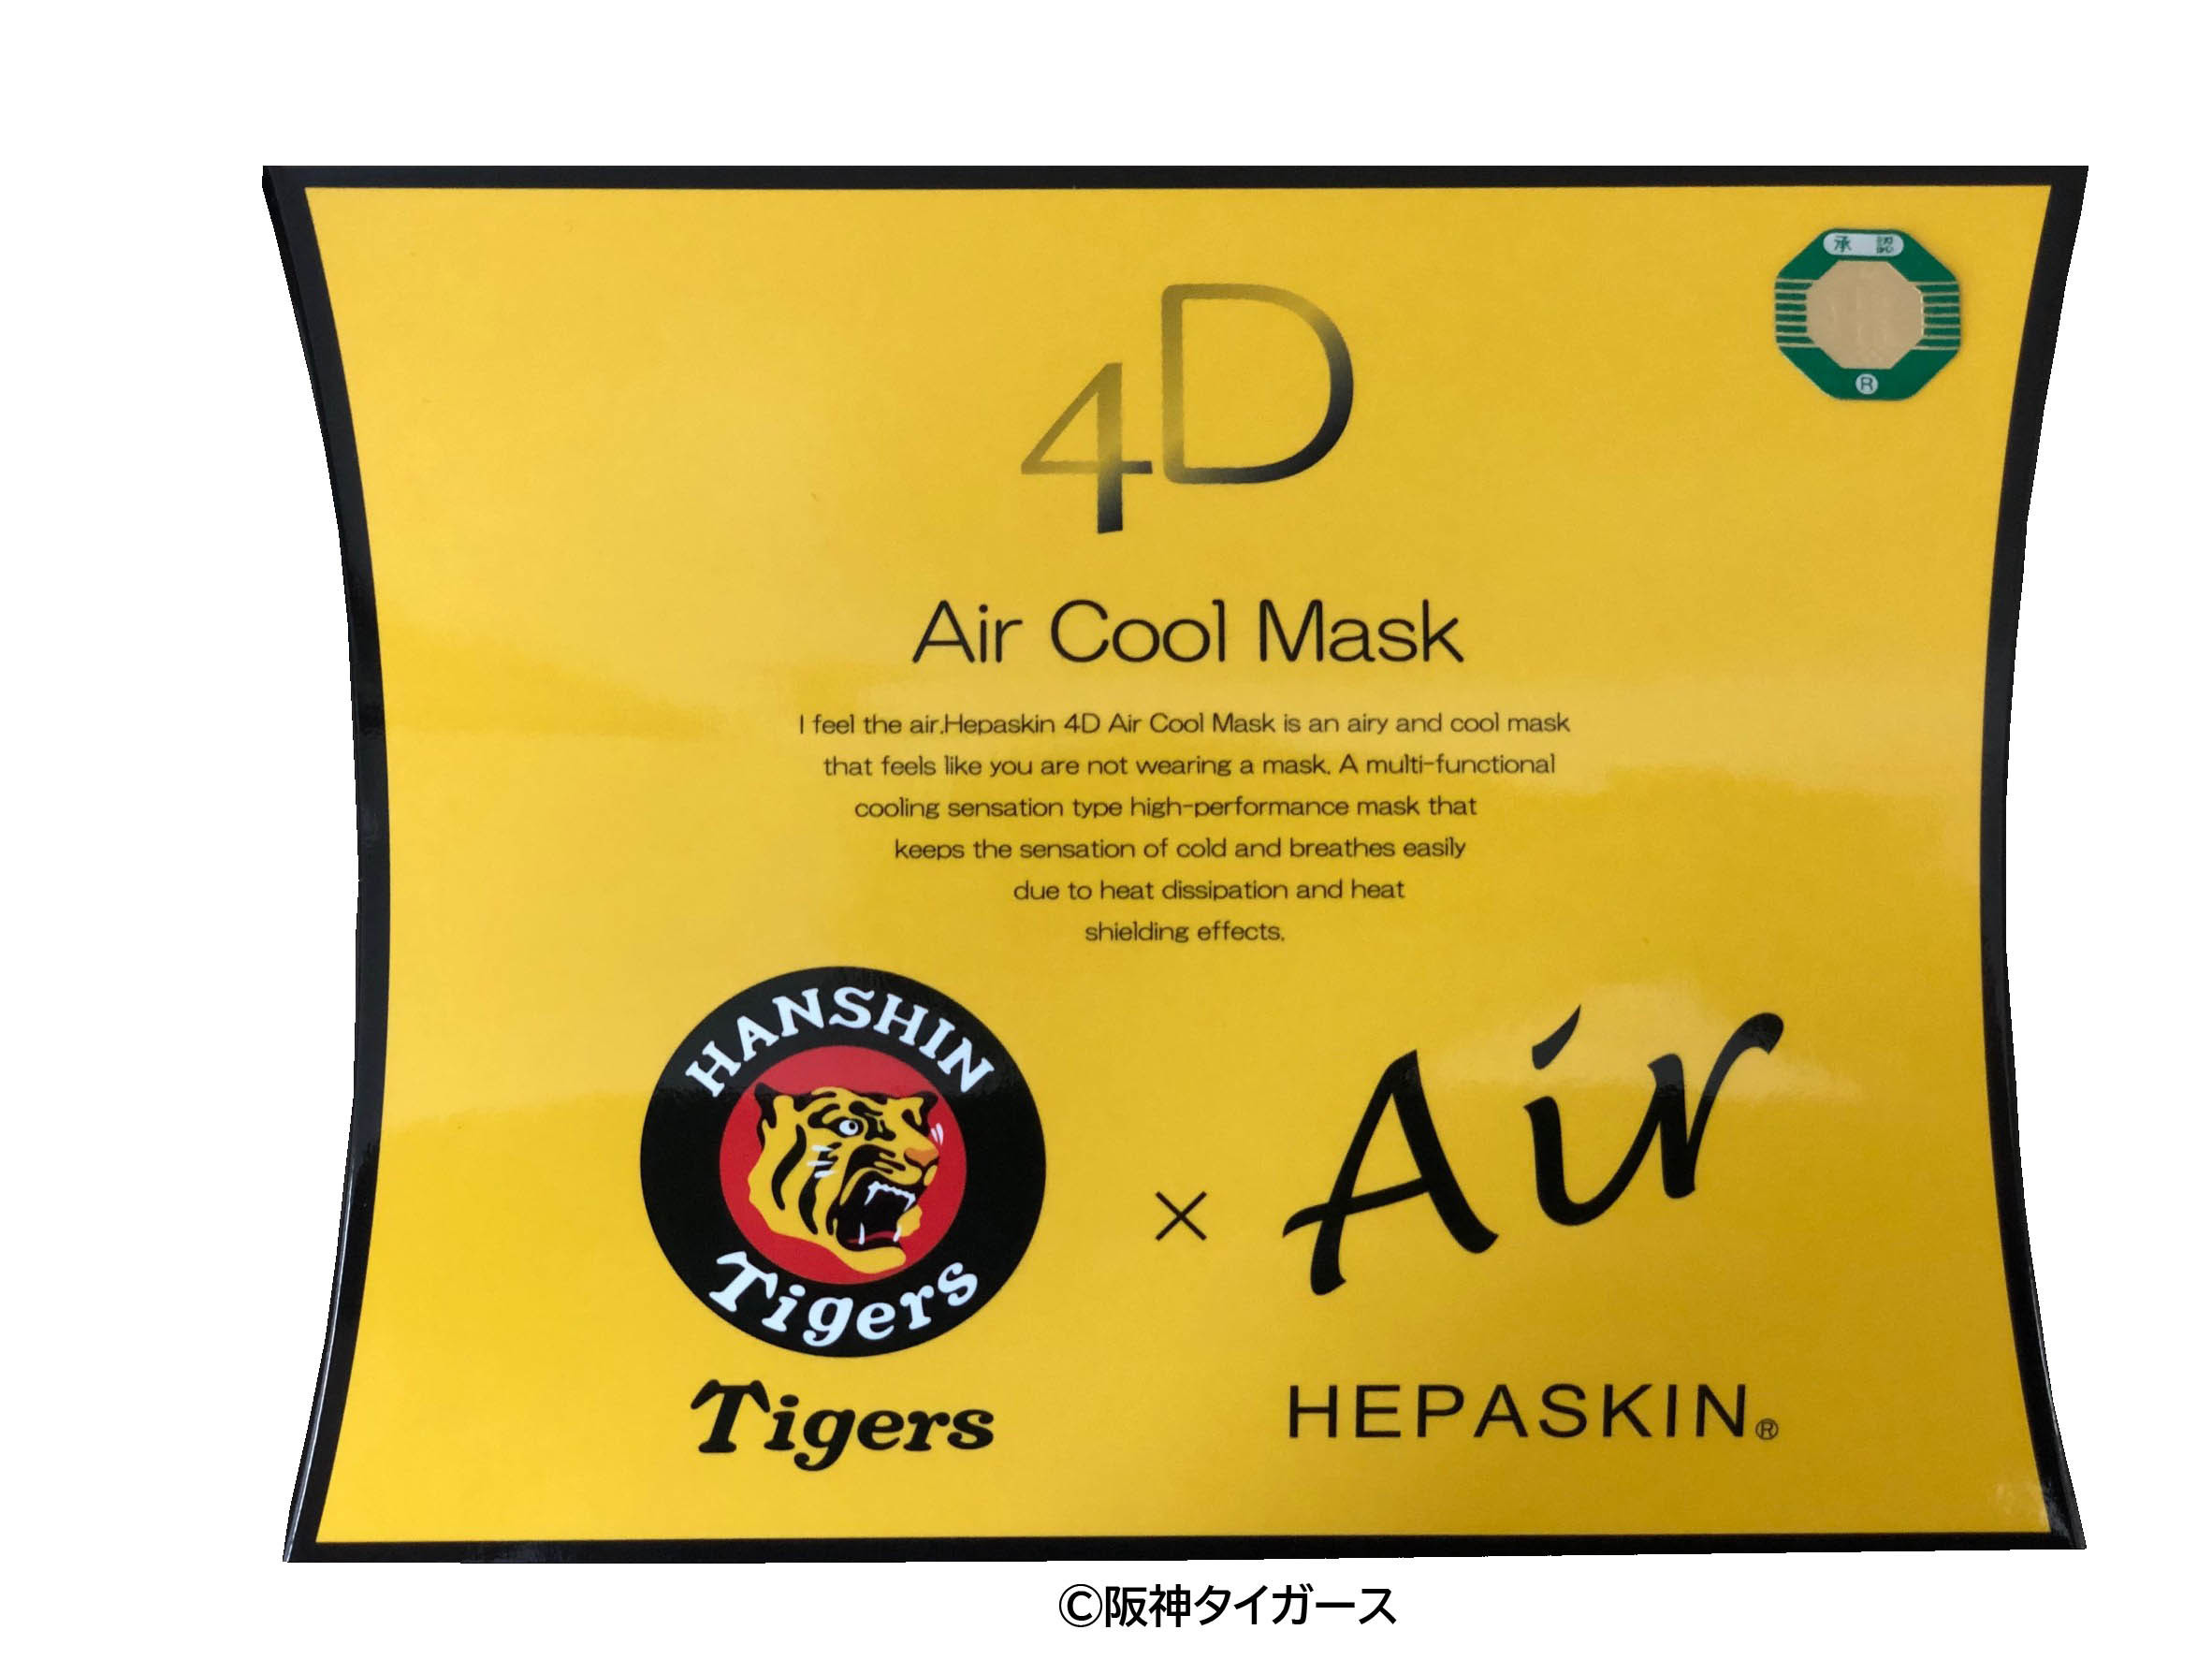 (C)阪神タイガースと美顔マウスカバー「HEPASKIN」がコラボ！
スポーツをしても呼吸がしやすい『4D Air Cool Mask』販売開始